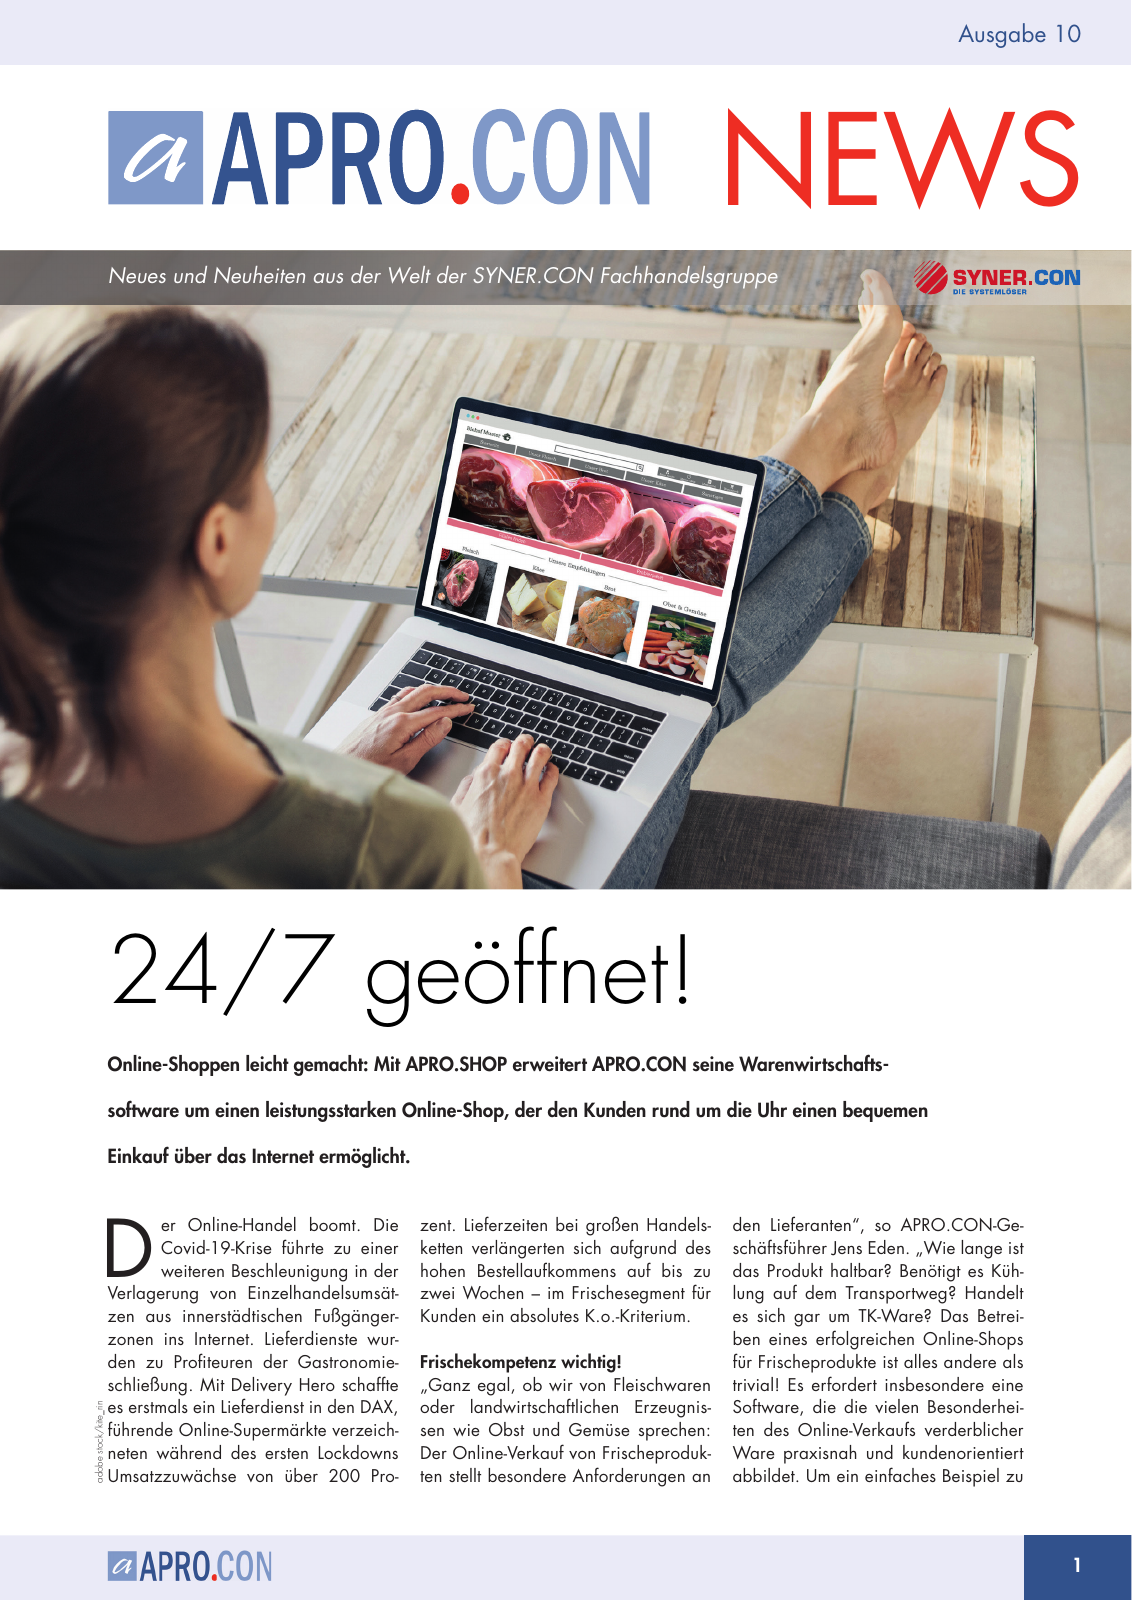 Vorschau Syner.con Newsletter Ausgabe 10 Seite 1